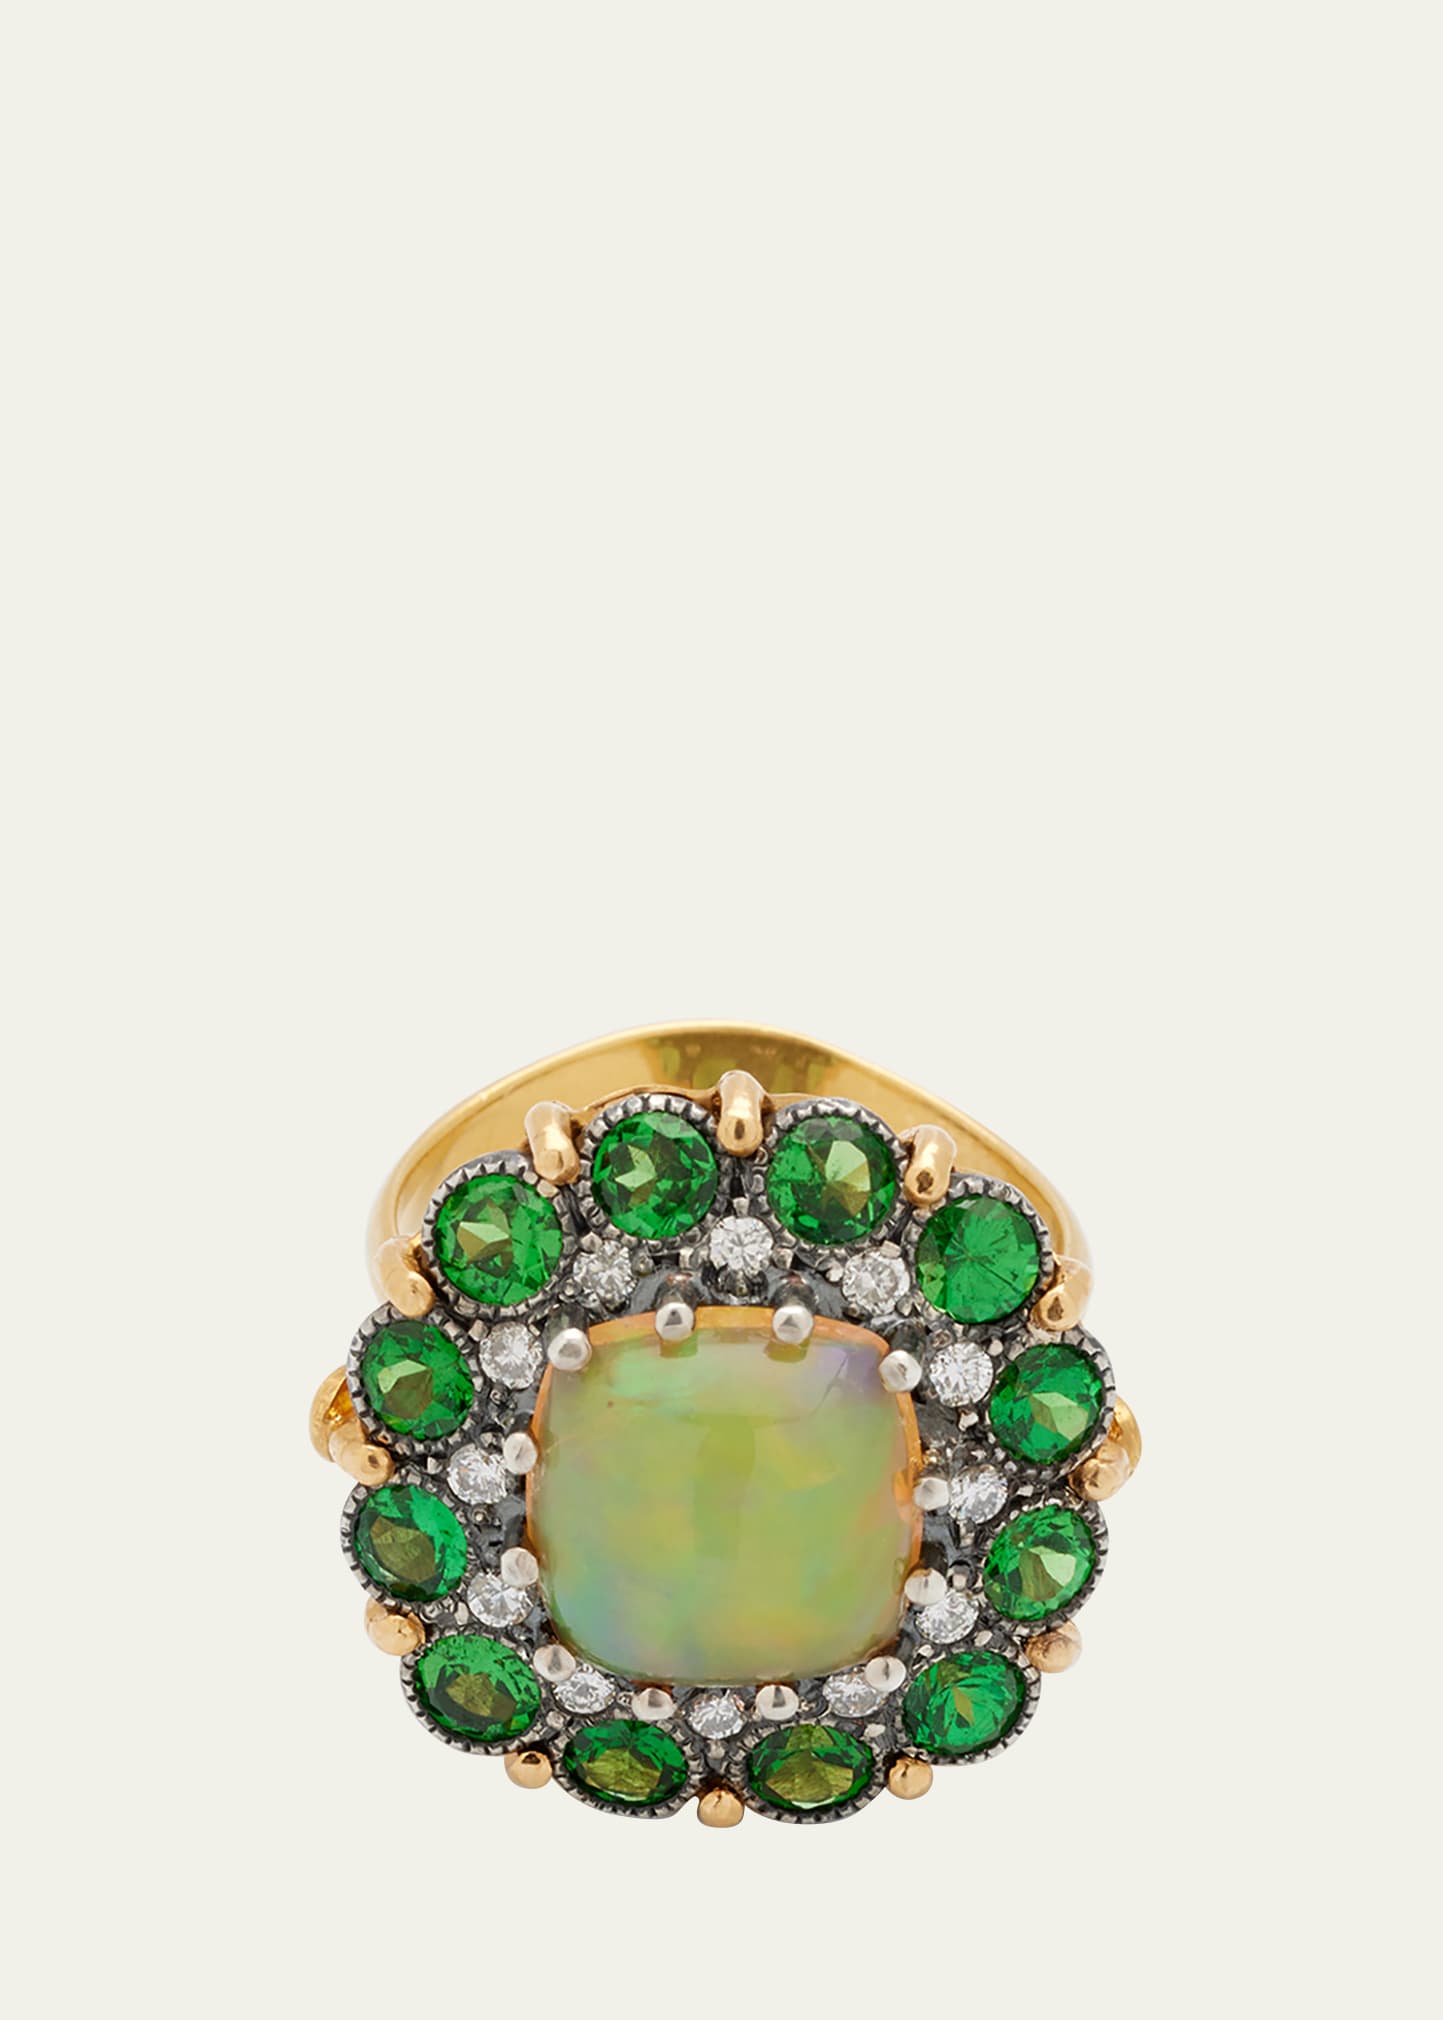 Arman Sarkisyan Opal Ring with Tsavorite and Diamonds